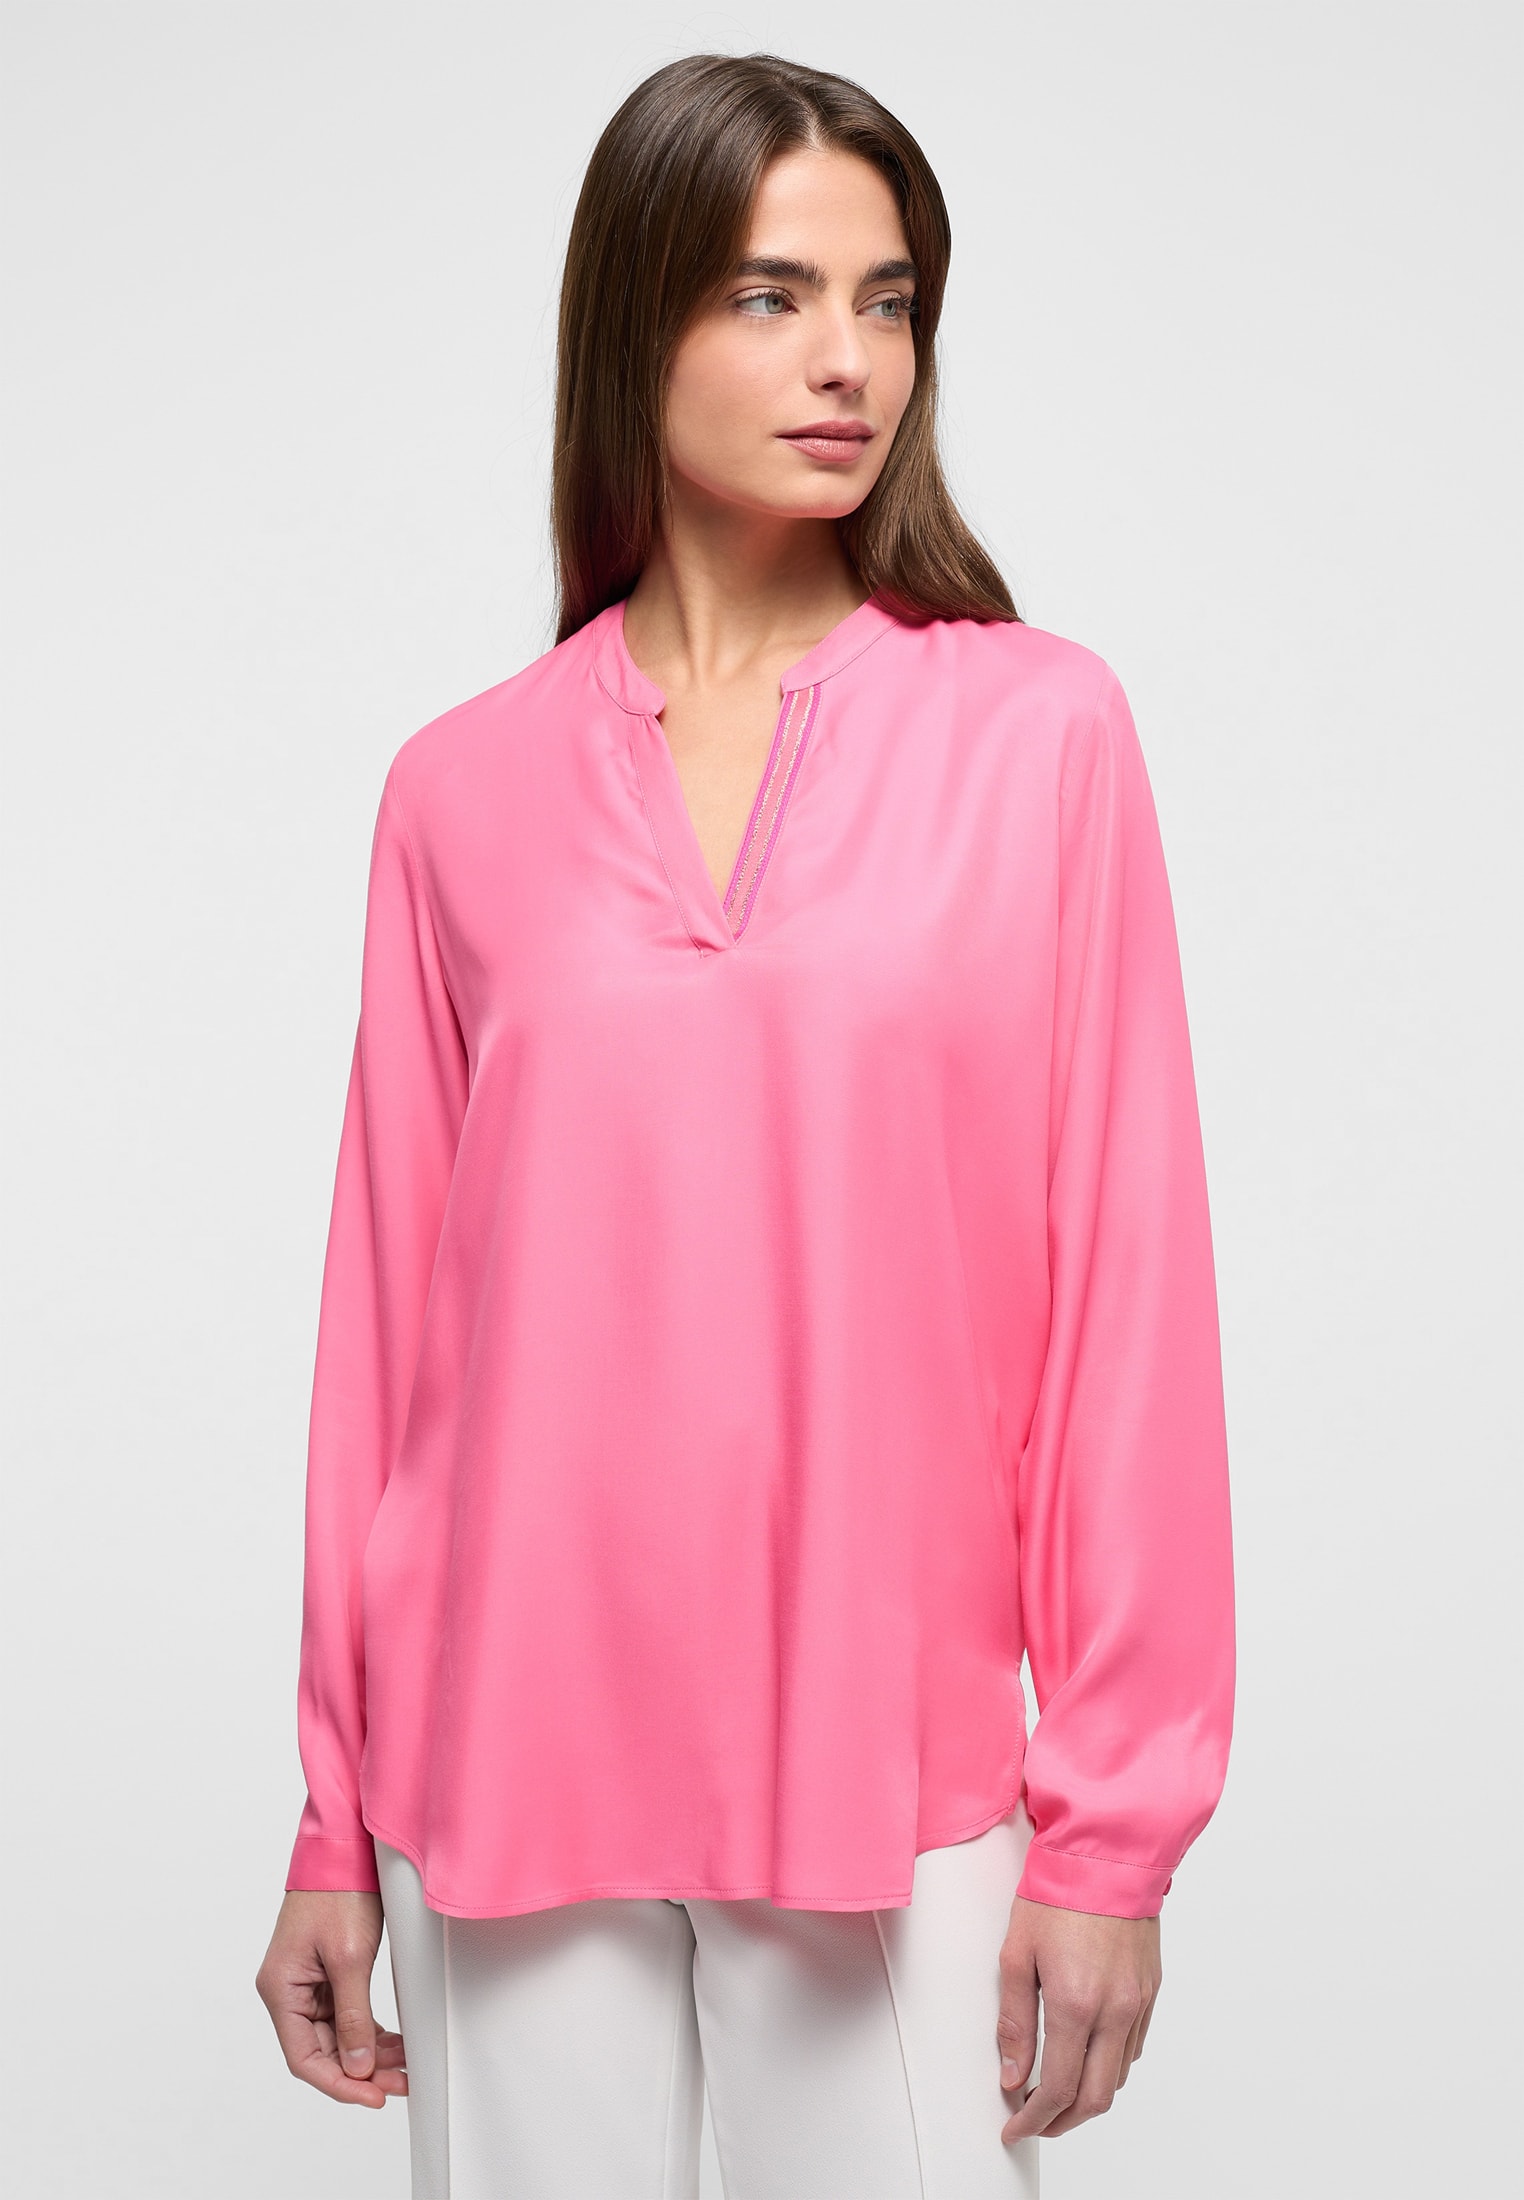 Viscose Shirt in | pink Bluse | unifarben 42 pink Langarm 2BL04272-15-21-42-1/1 | 